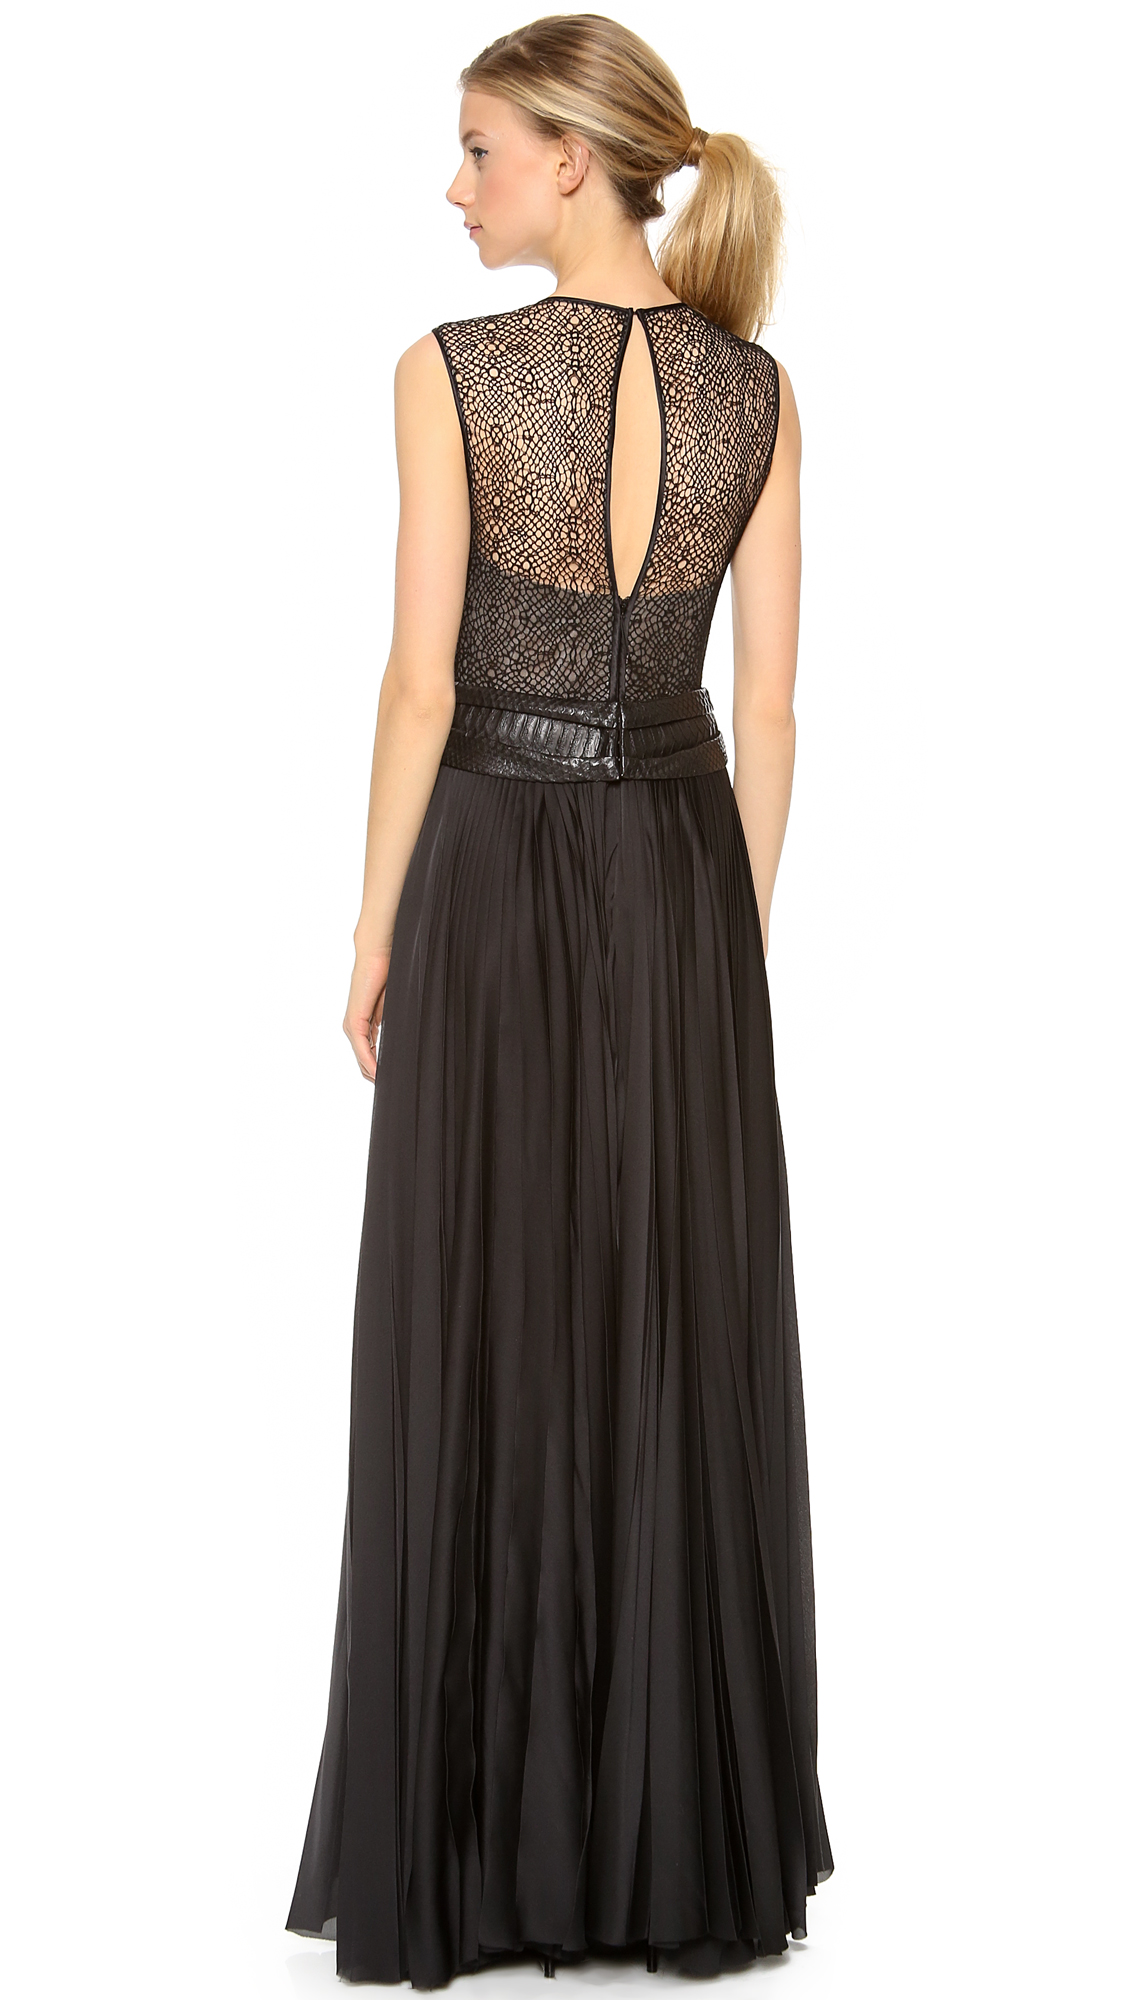 Lyst - J. mendel Silk Bustier Gown in Black